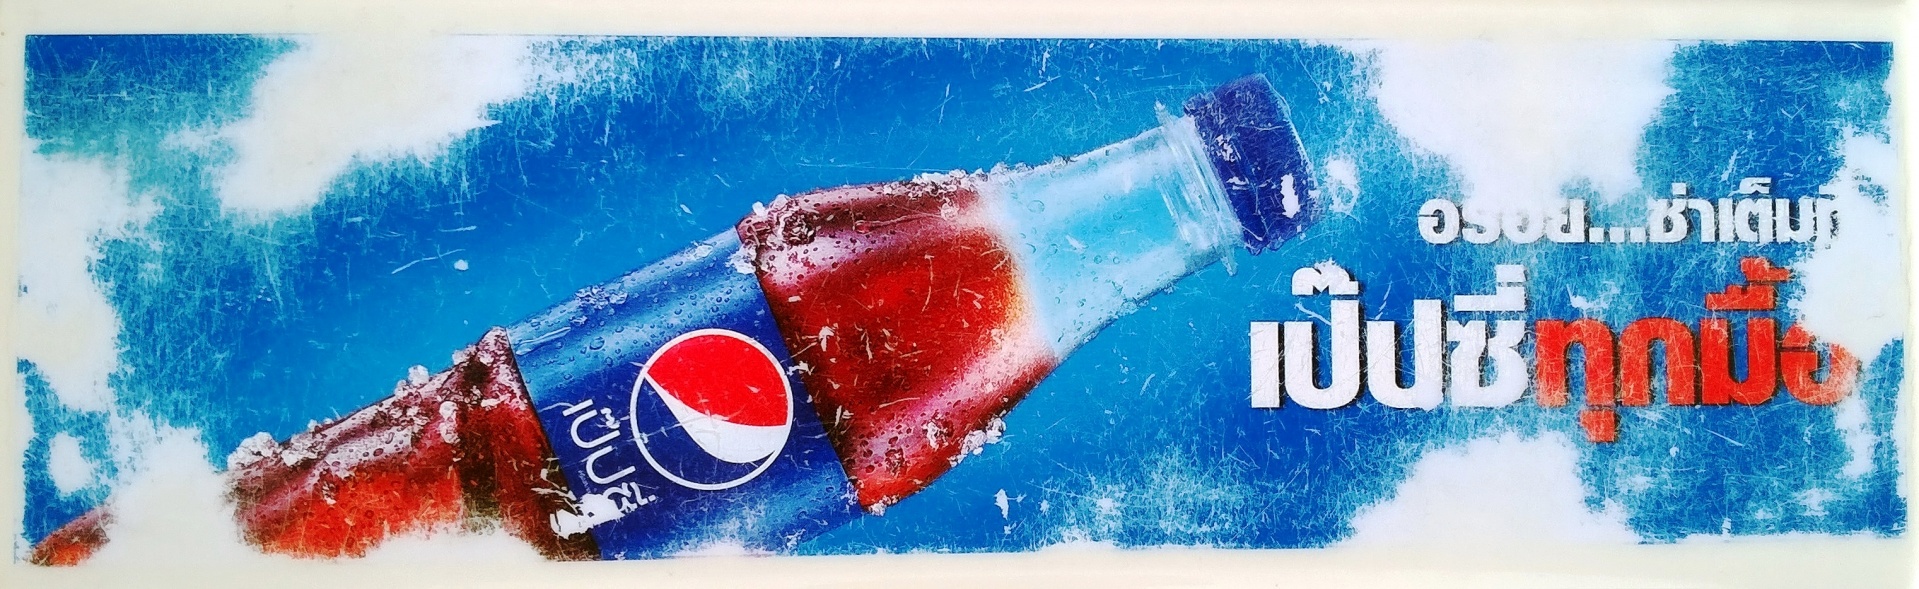 Vintage gekrast Pepsi-cola-teken